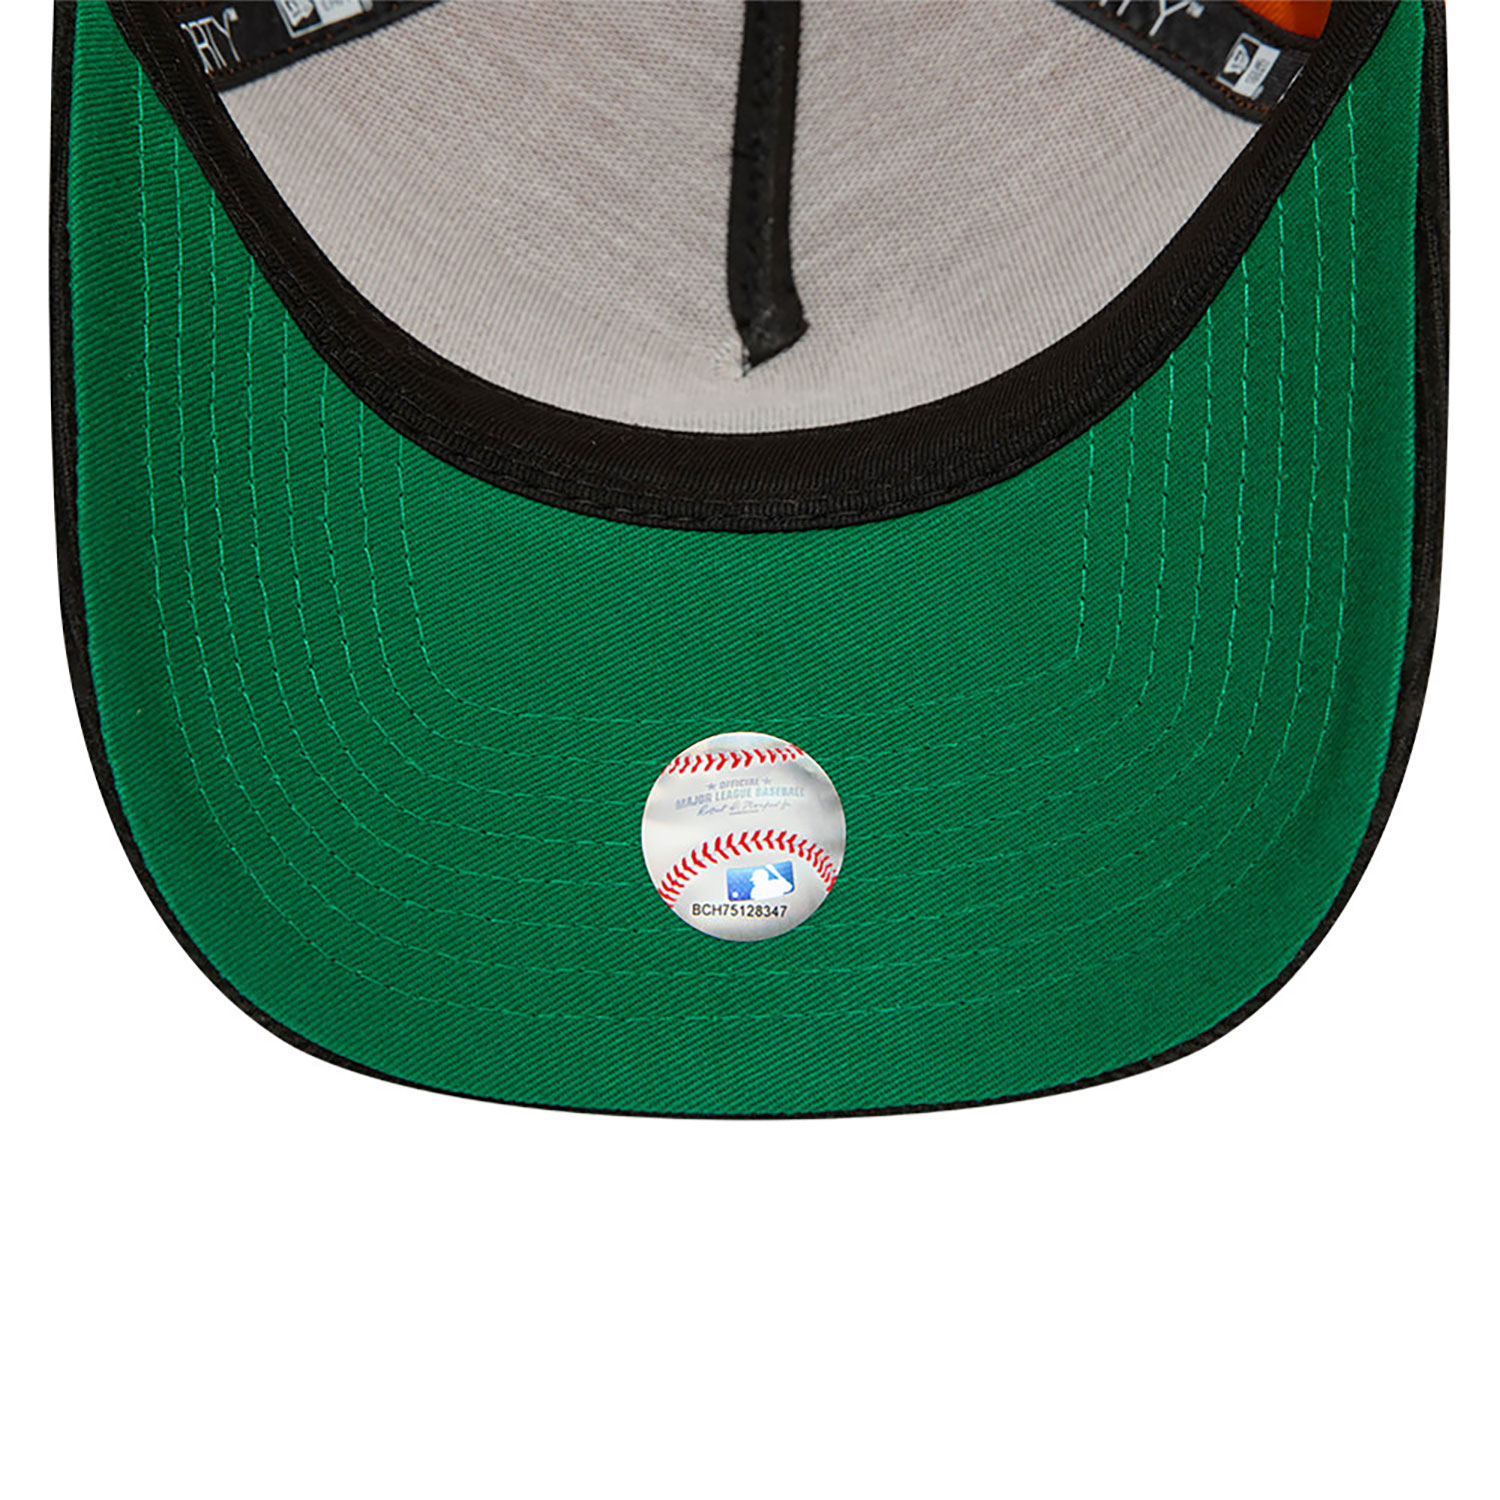 Chicago White Sox MLB Contrast Visor Orange A-Frame 9FORTY Adjustable Cap